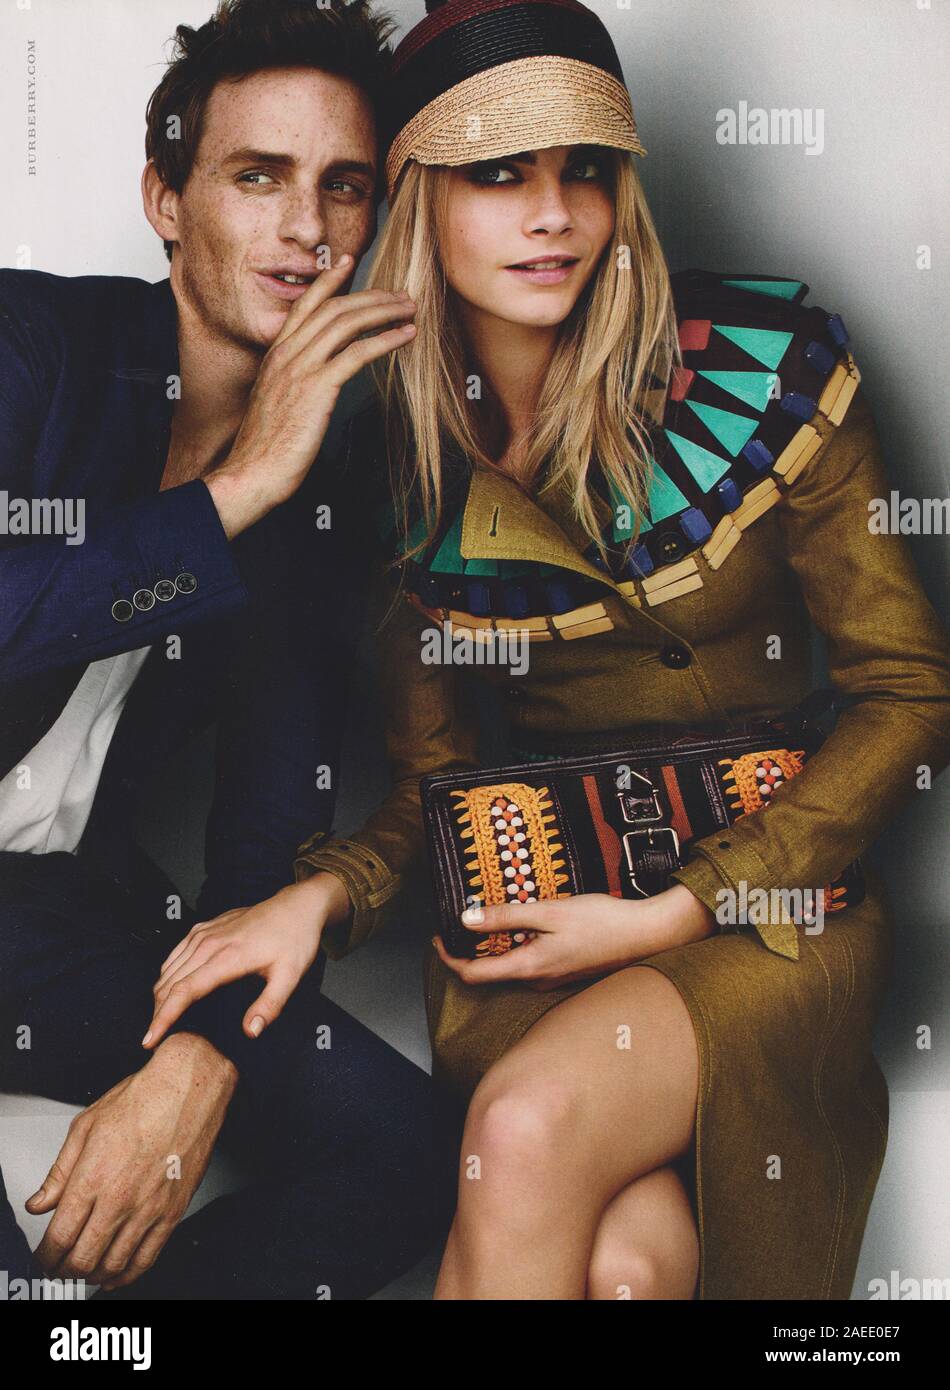 Plakat werbung Burberry Fashion House mit Cara Delevingne, Eddie Redmayne  im Magazin von 2012, Werbung, kreative Burberry 2010 s Anzeige  Stockfotografie - Alamy